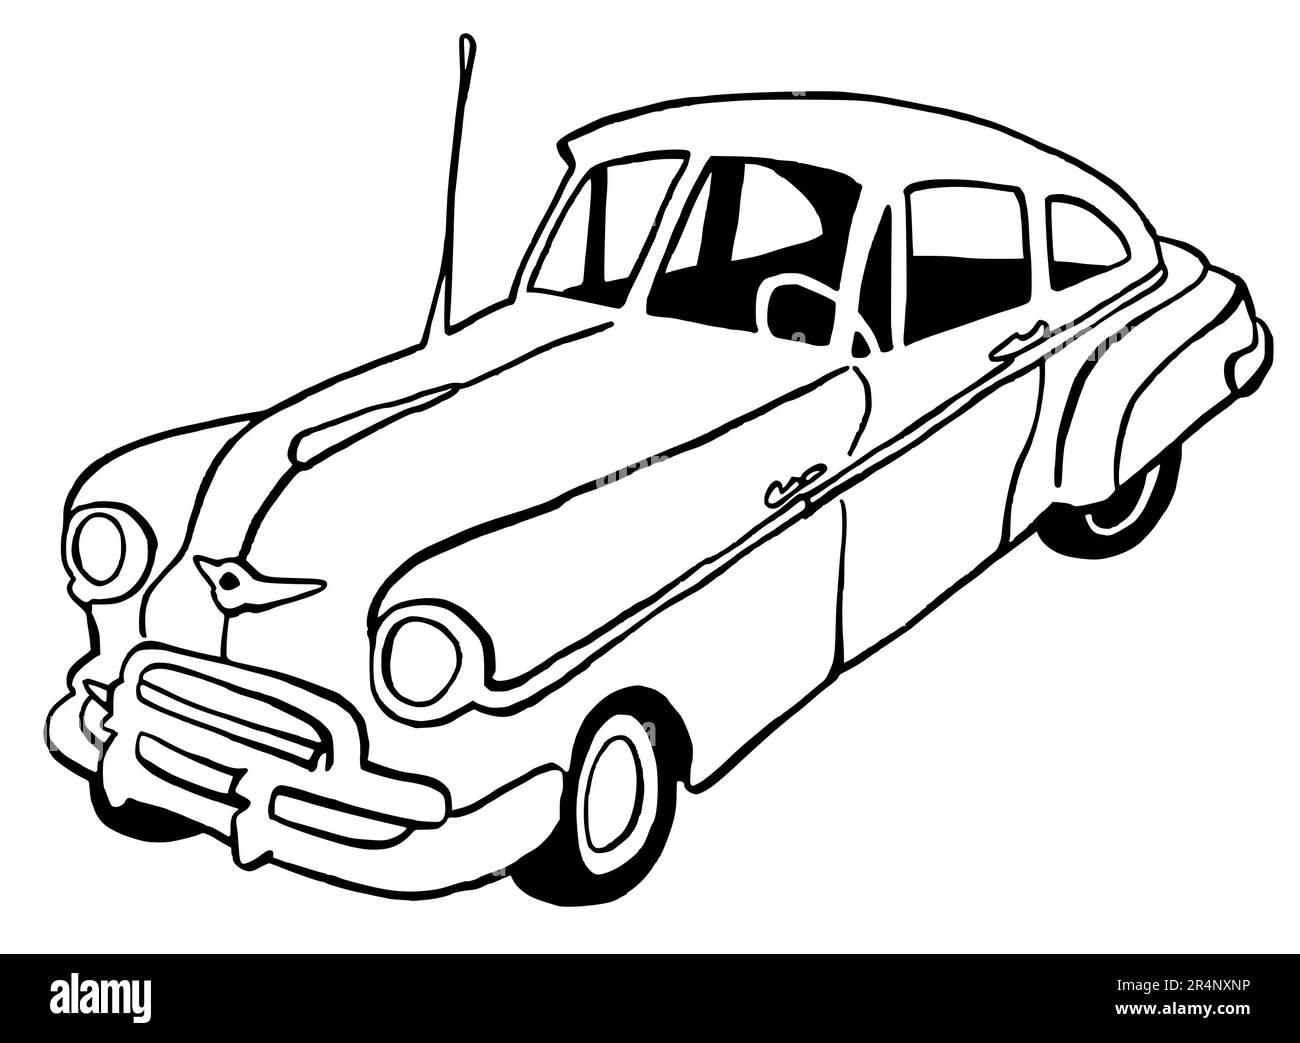 Illustration dessinée à la main d'une voiture rétro, américaine, pleine grandeur, isolée sur un fond blanc, avec des dessins au trait noir Banque D'Images